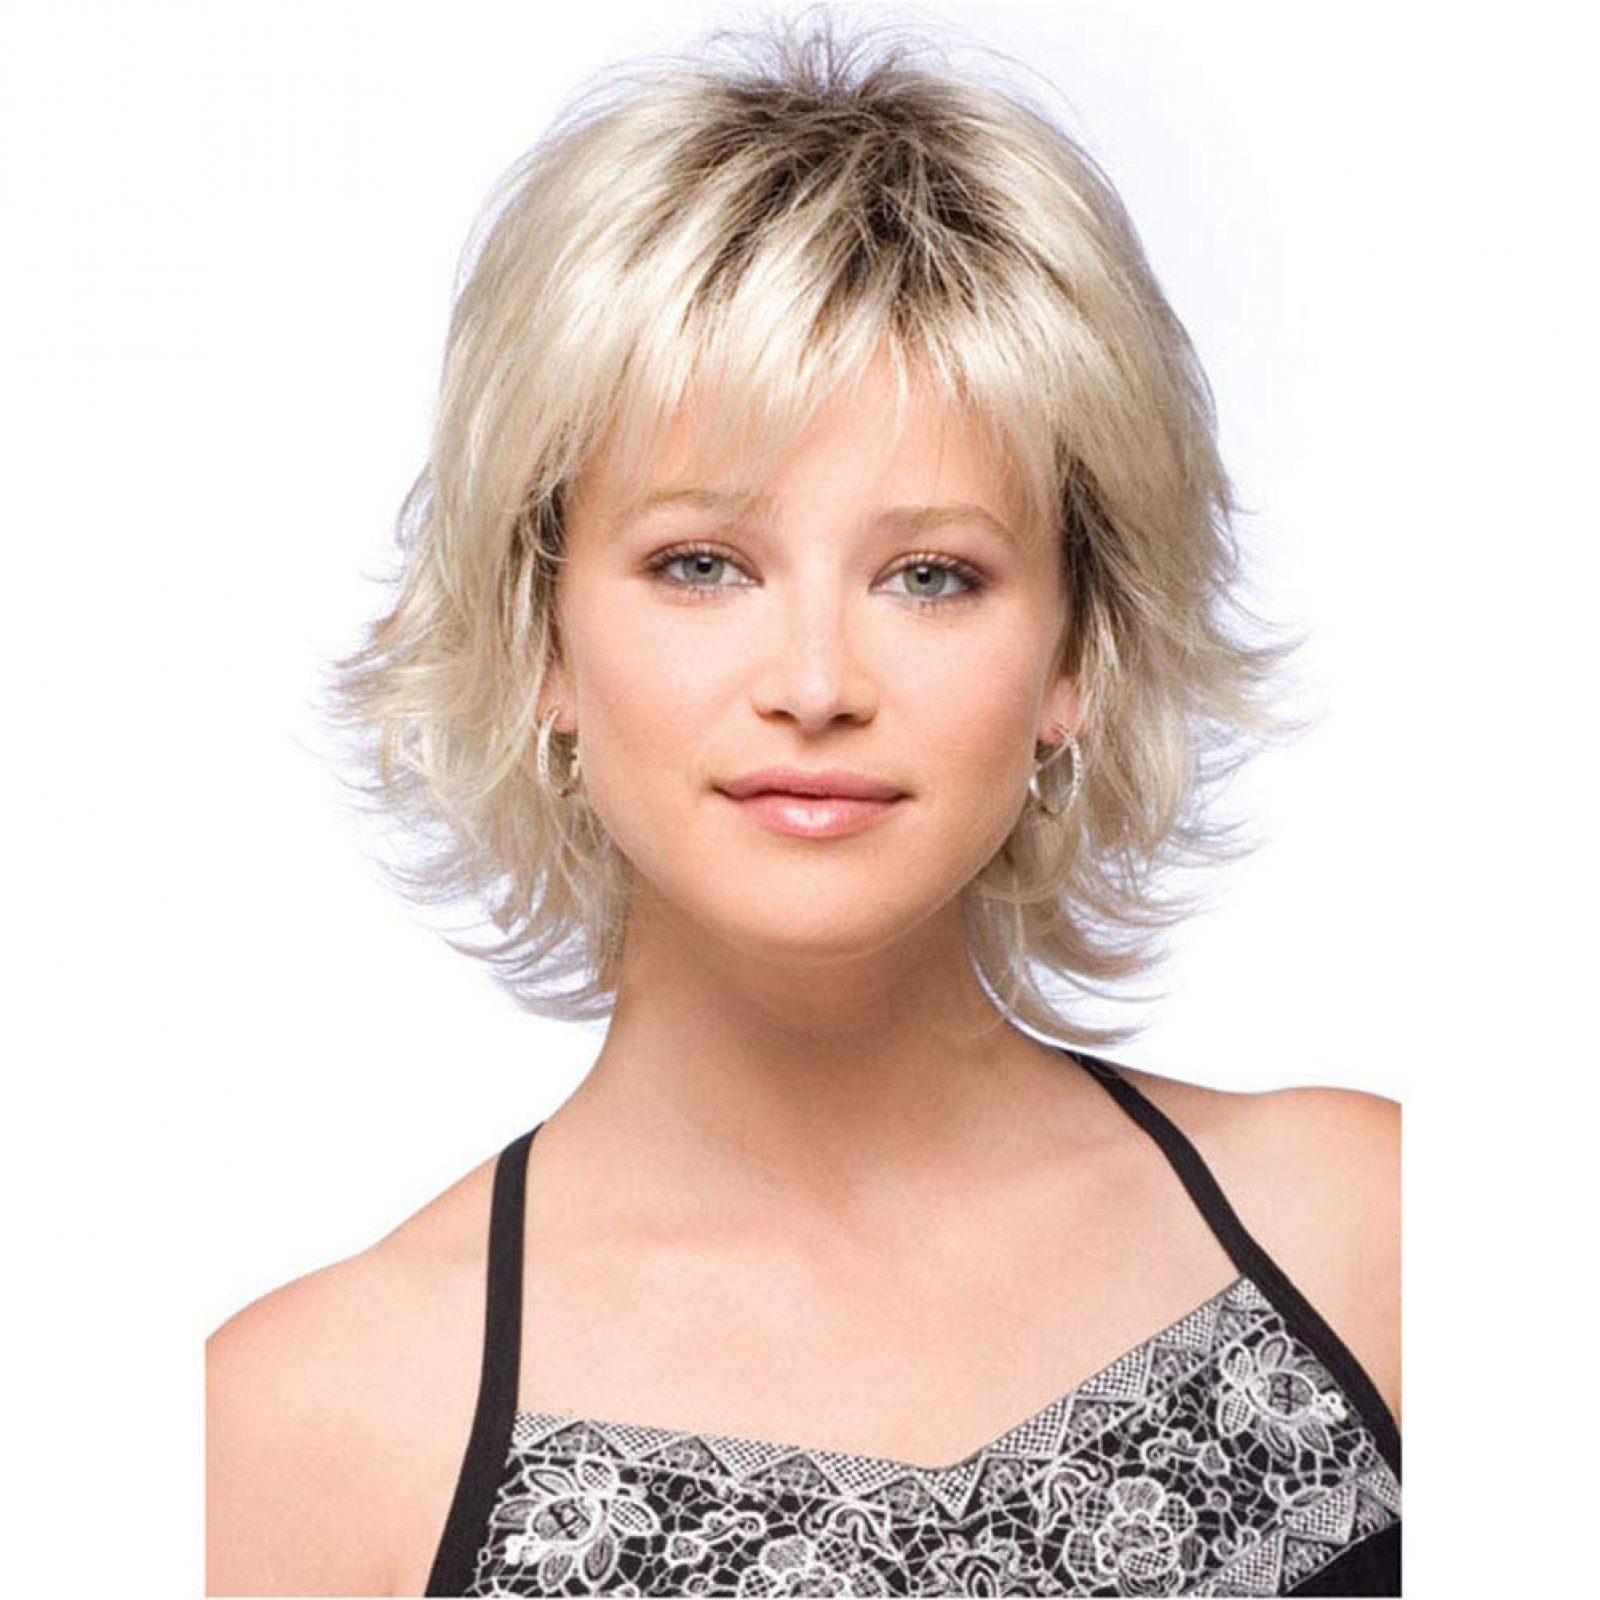 Aatrx Kunsthaarperücke Stilvolle Blondton-Styling-Perücke mit kurzem lockigem Haar für Damen